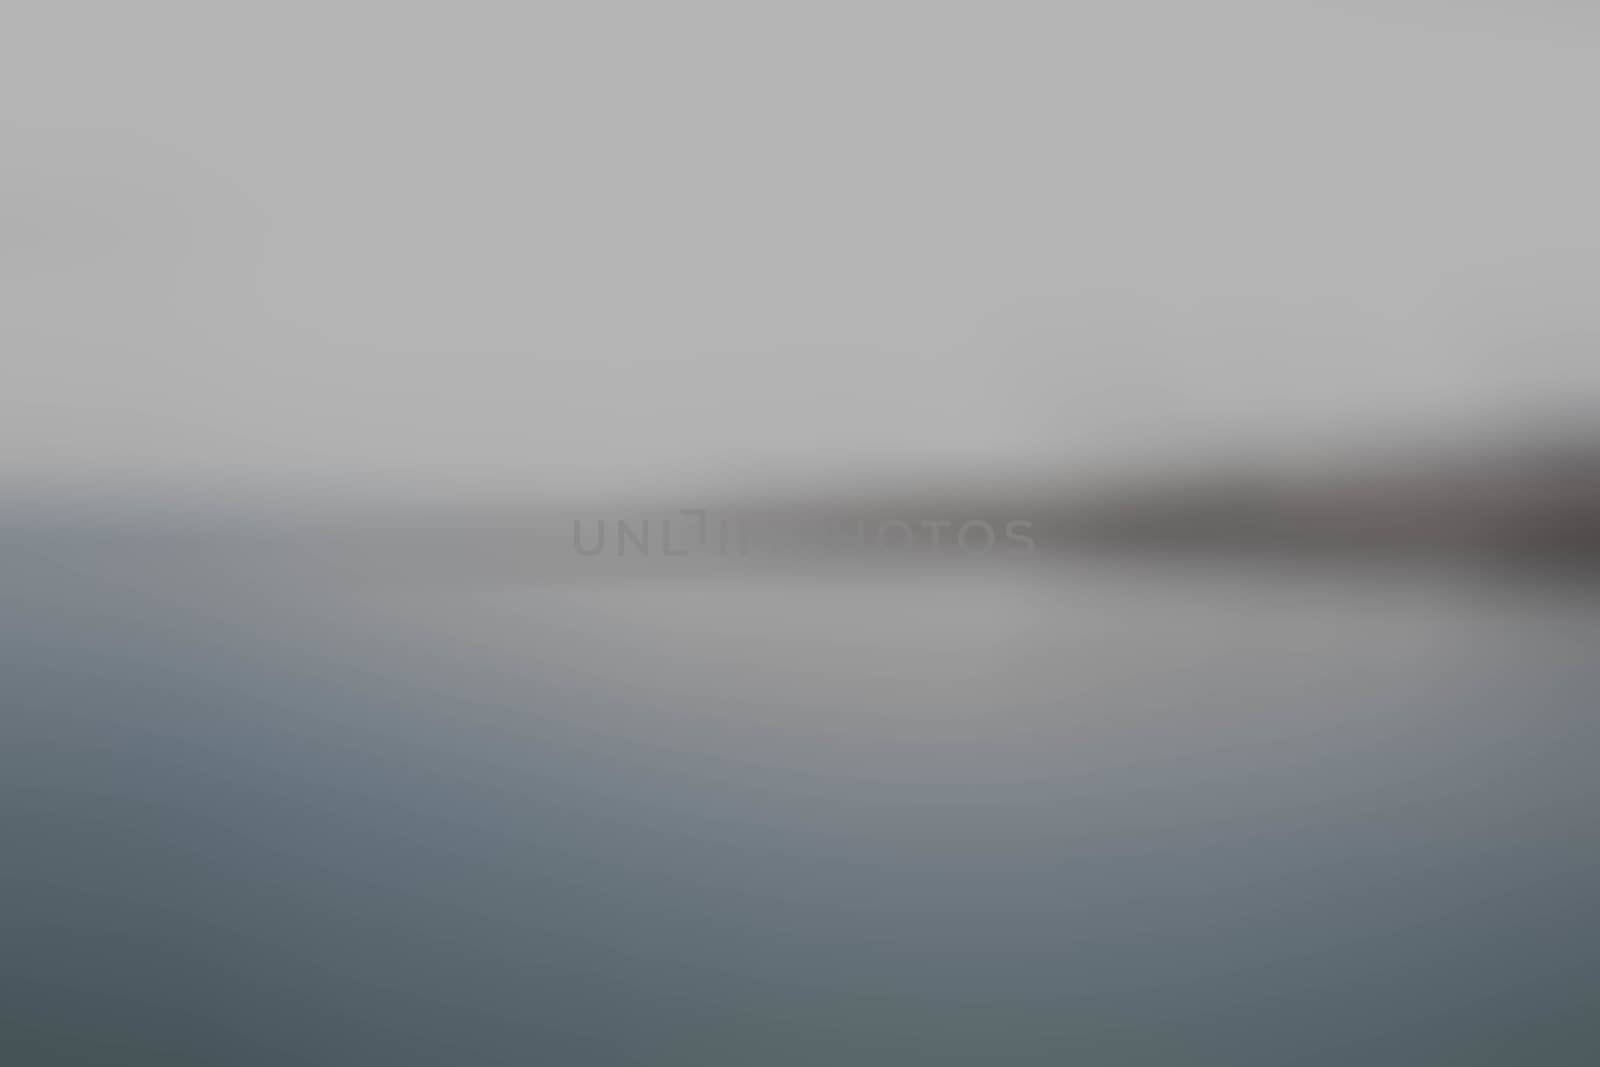 Background blur sea by primzrider